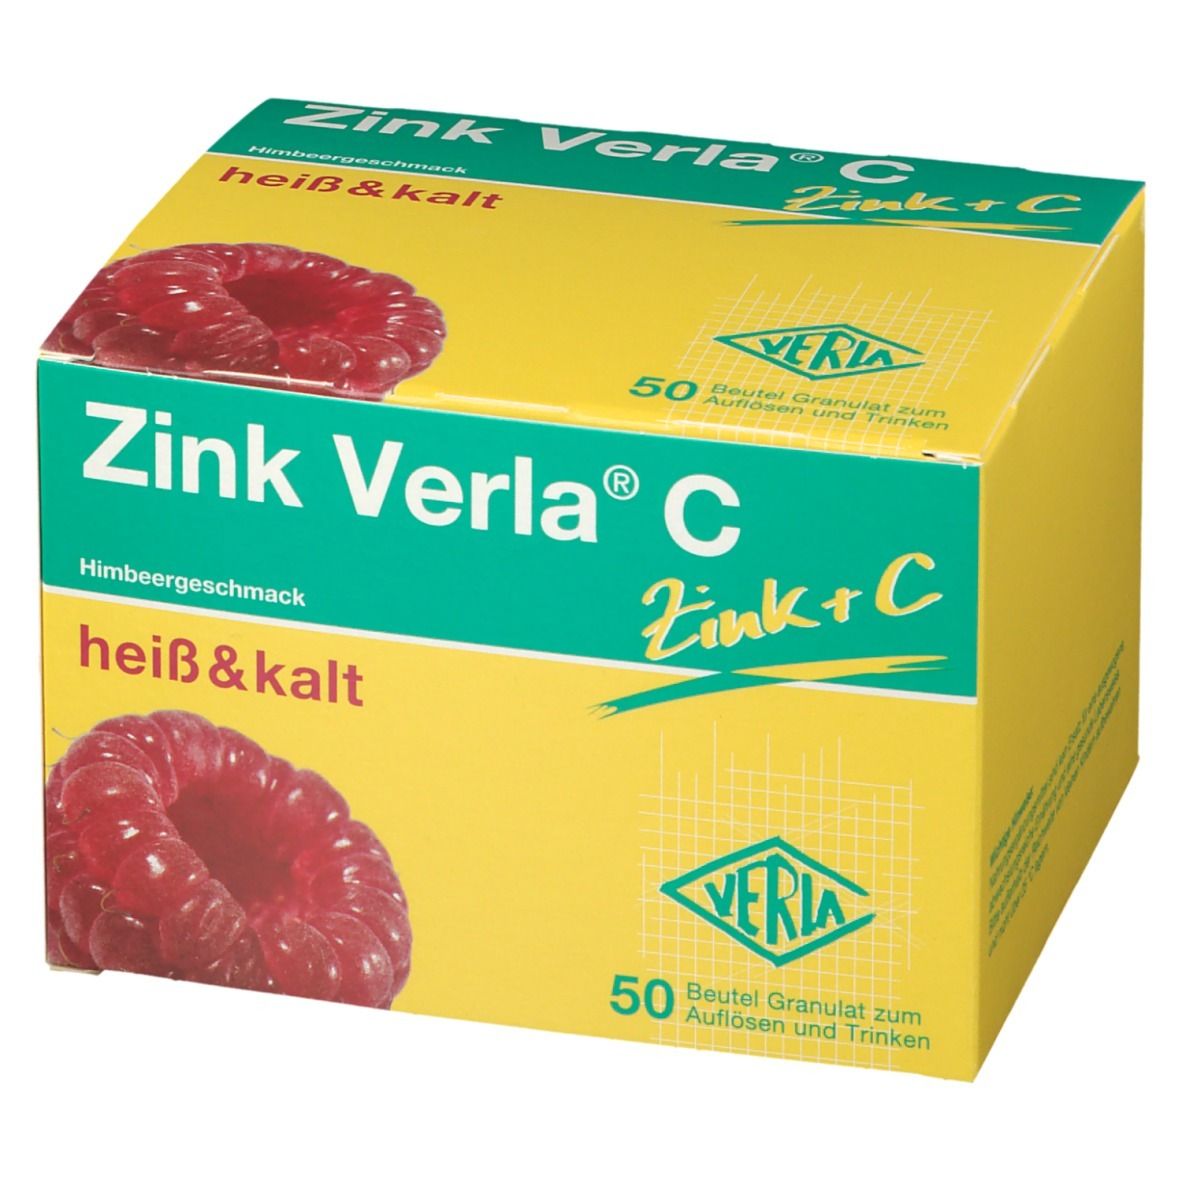 Zink Verla® C